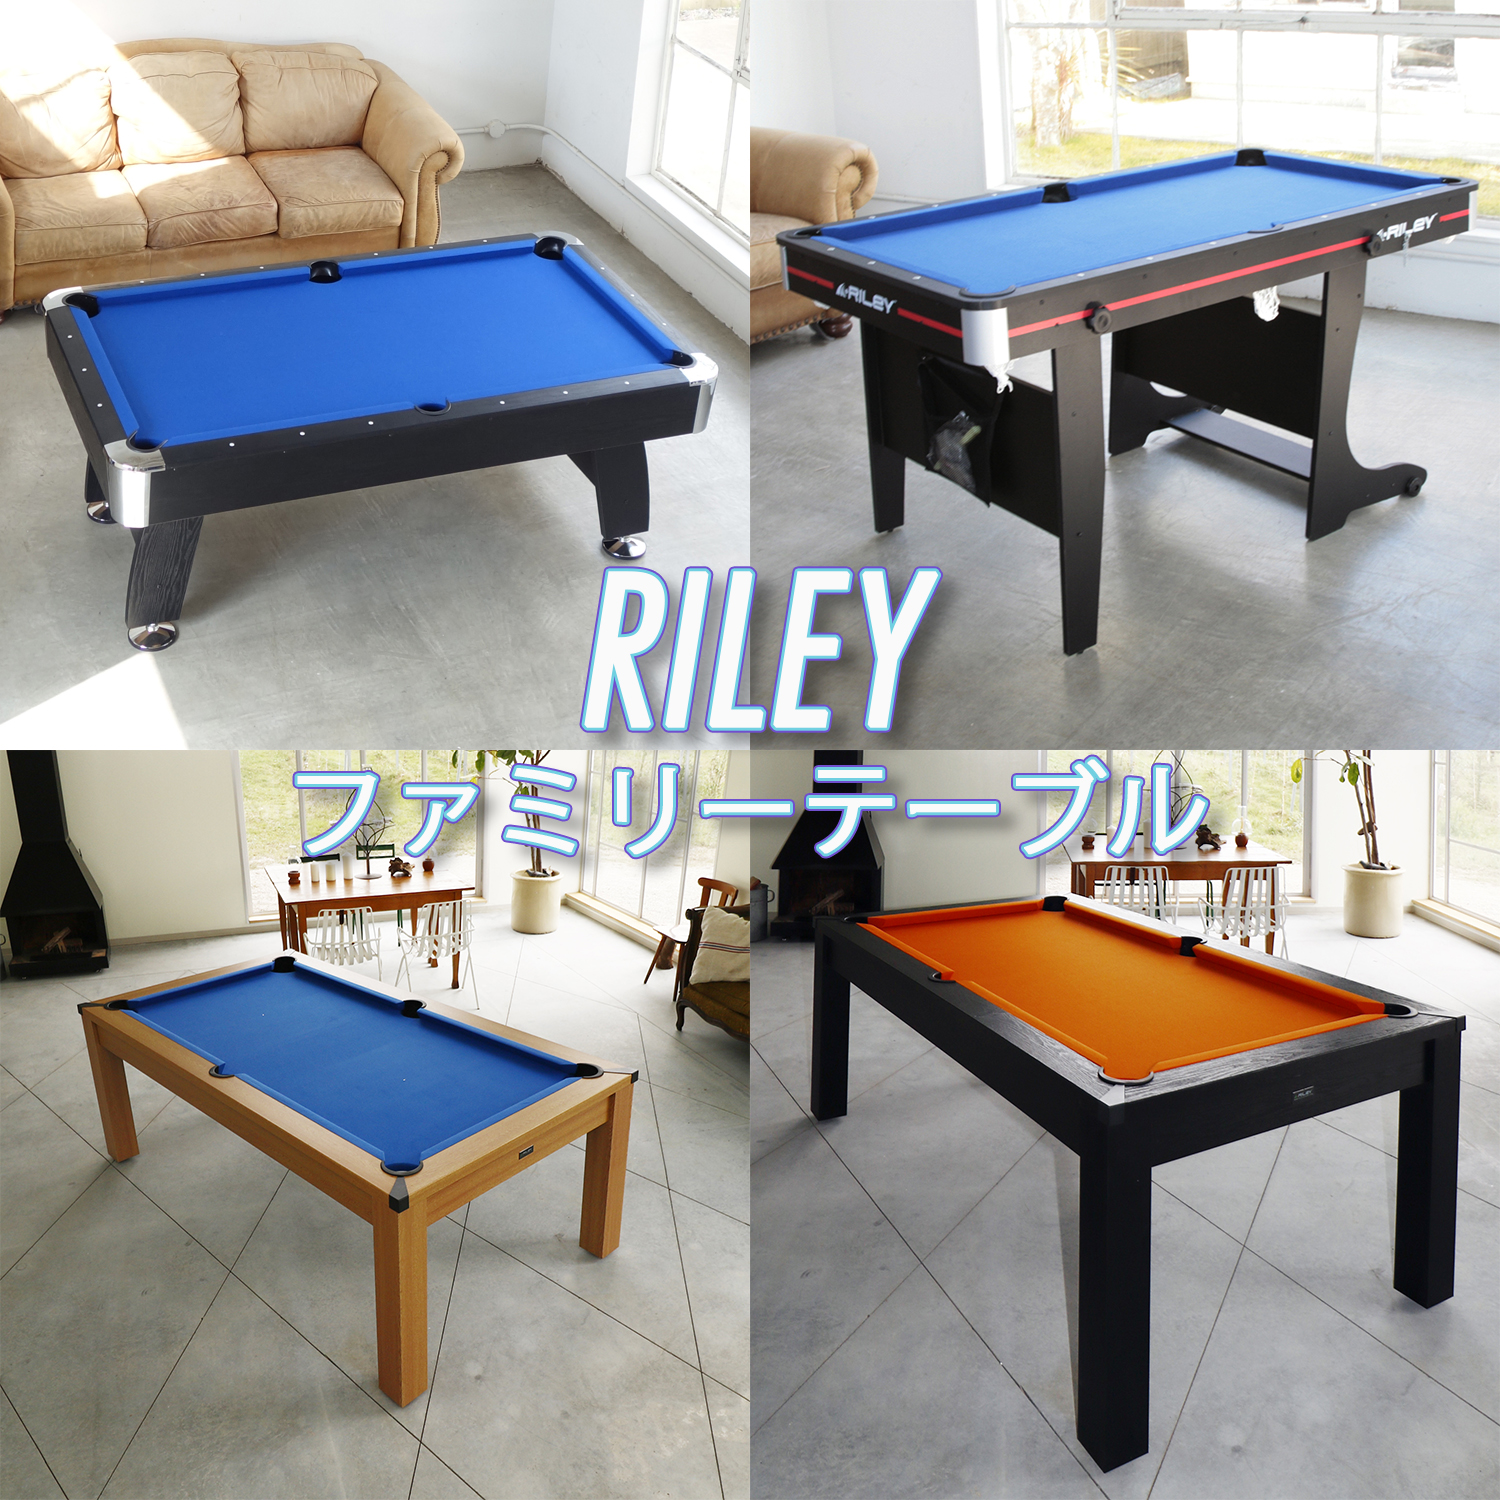 ビリヤード台 Riley BCF-6 79-0293 linkbits.online